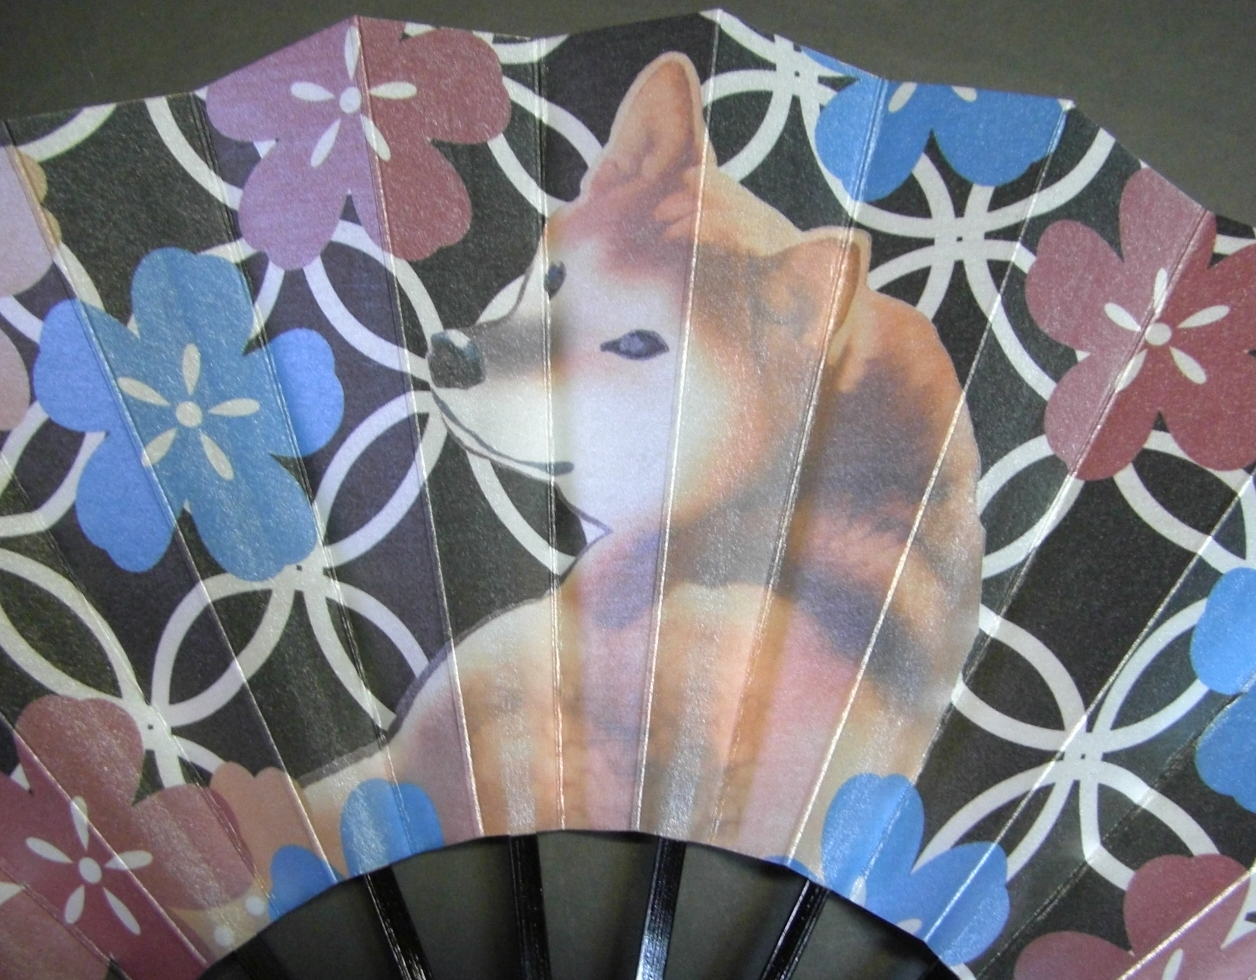 舞扇子　柴犬と桜　キラ引き画像